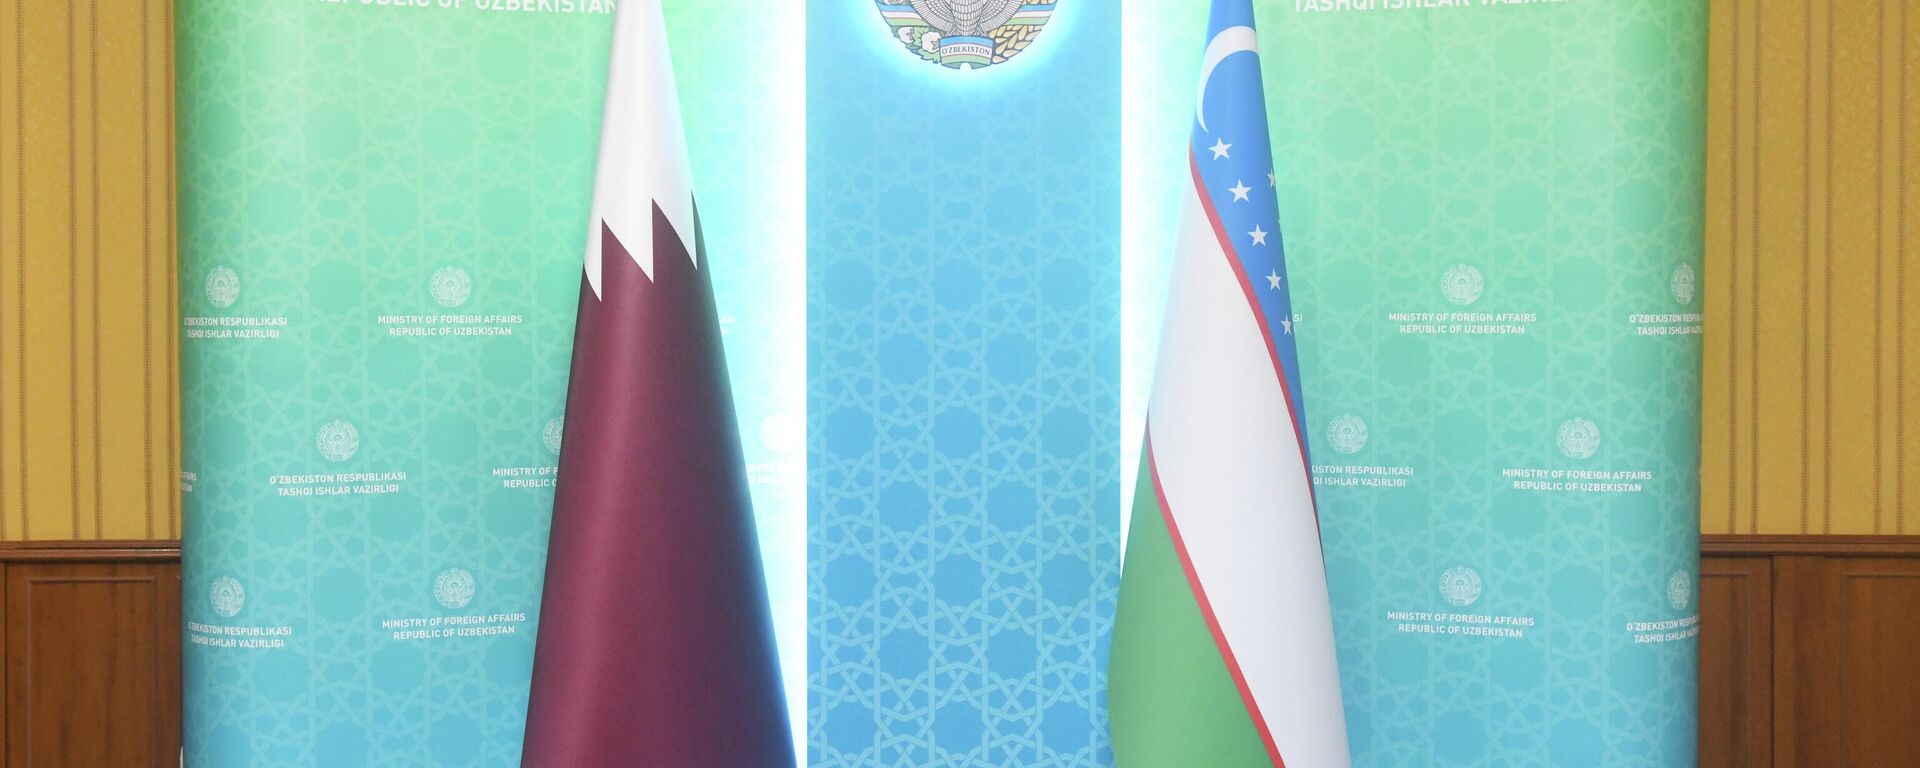 Флаги Узбекистана и Катара - Sputnik Ўзбекистон, 1920, 09.06.2021